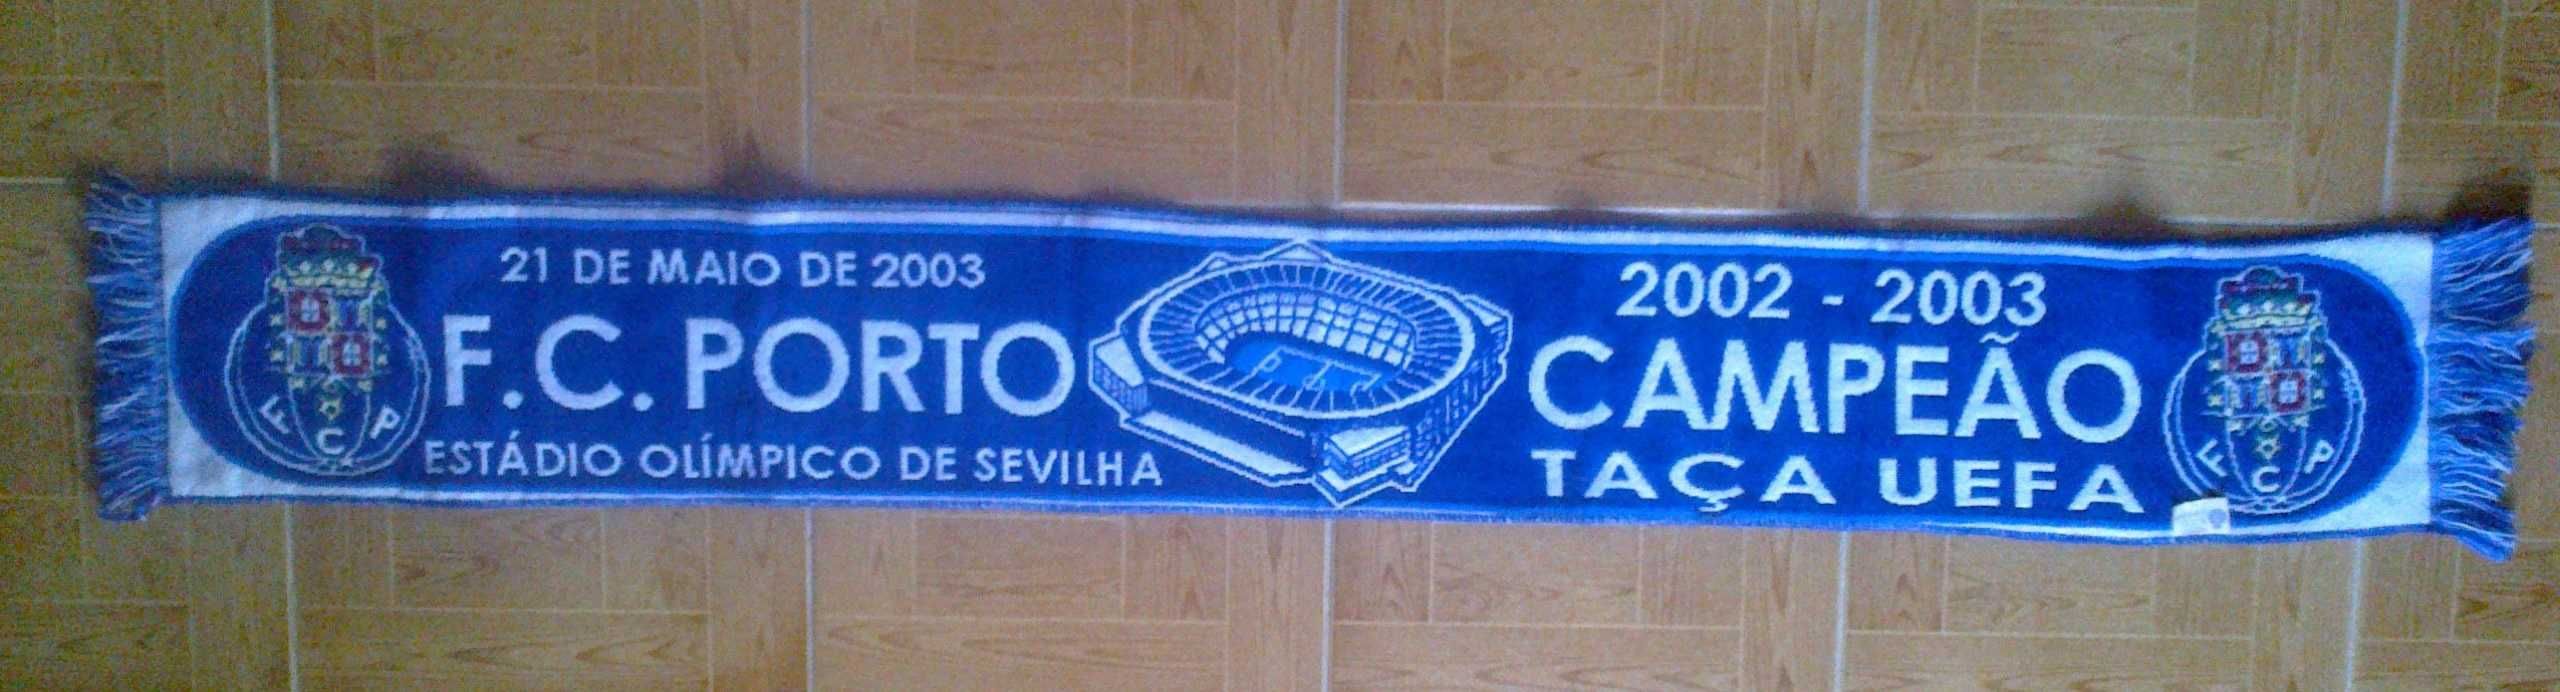 Cachecol do Futebol Clube do Porto - Campeão da taça UEFA 2002/2003